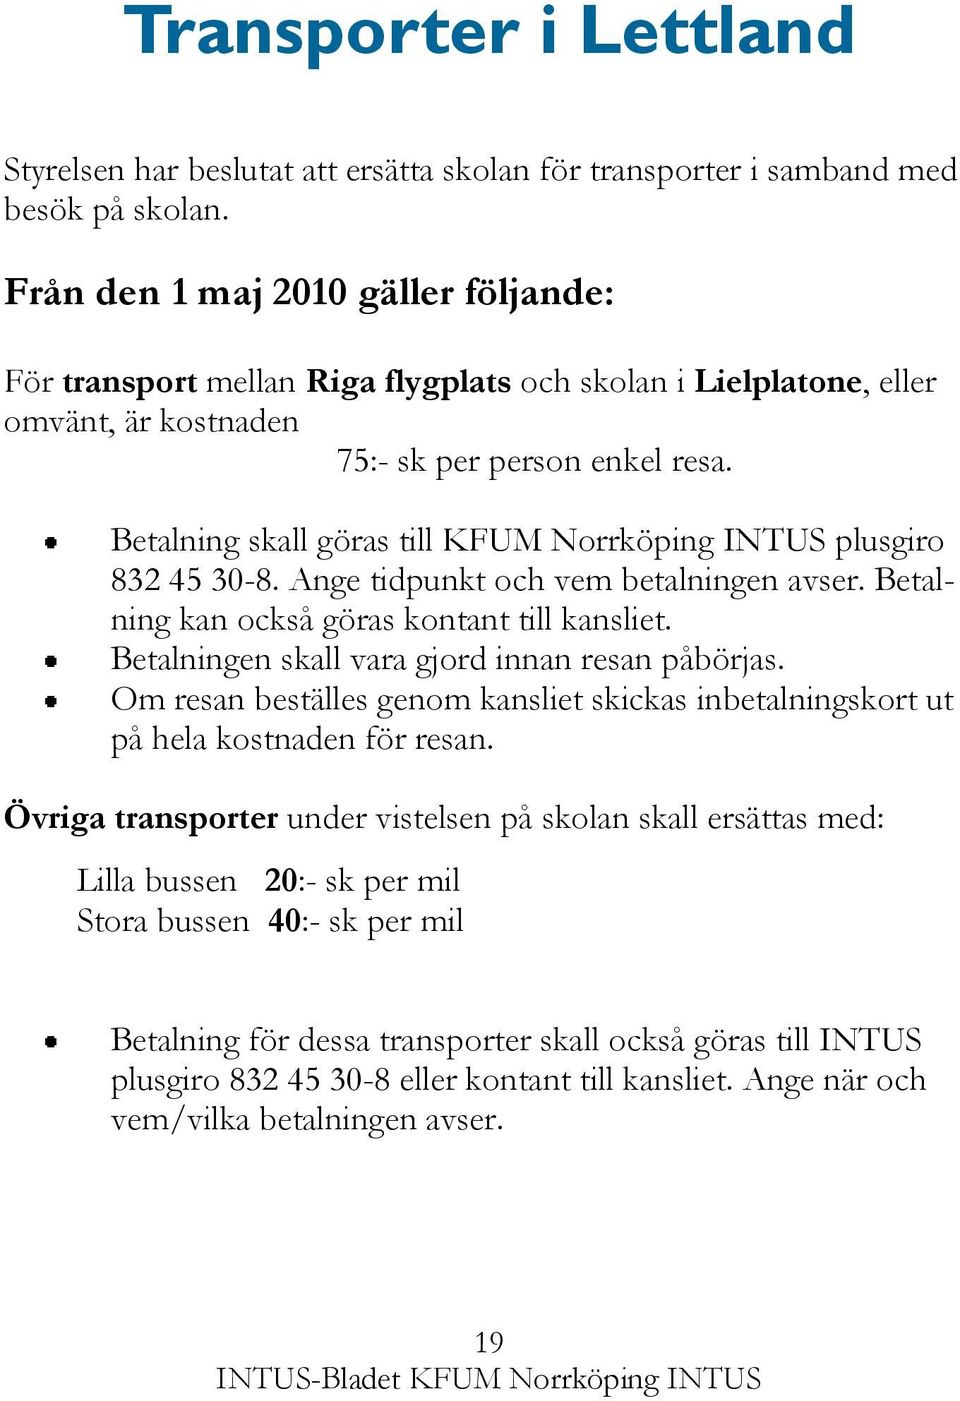 Betalning skall göras till KFUM Norrköping INTUS plusgiro 832 45 30-8. Ange tidpunkt och vem betalningen avser. Betalning kan också göras kontant till kansliet.